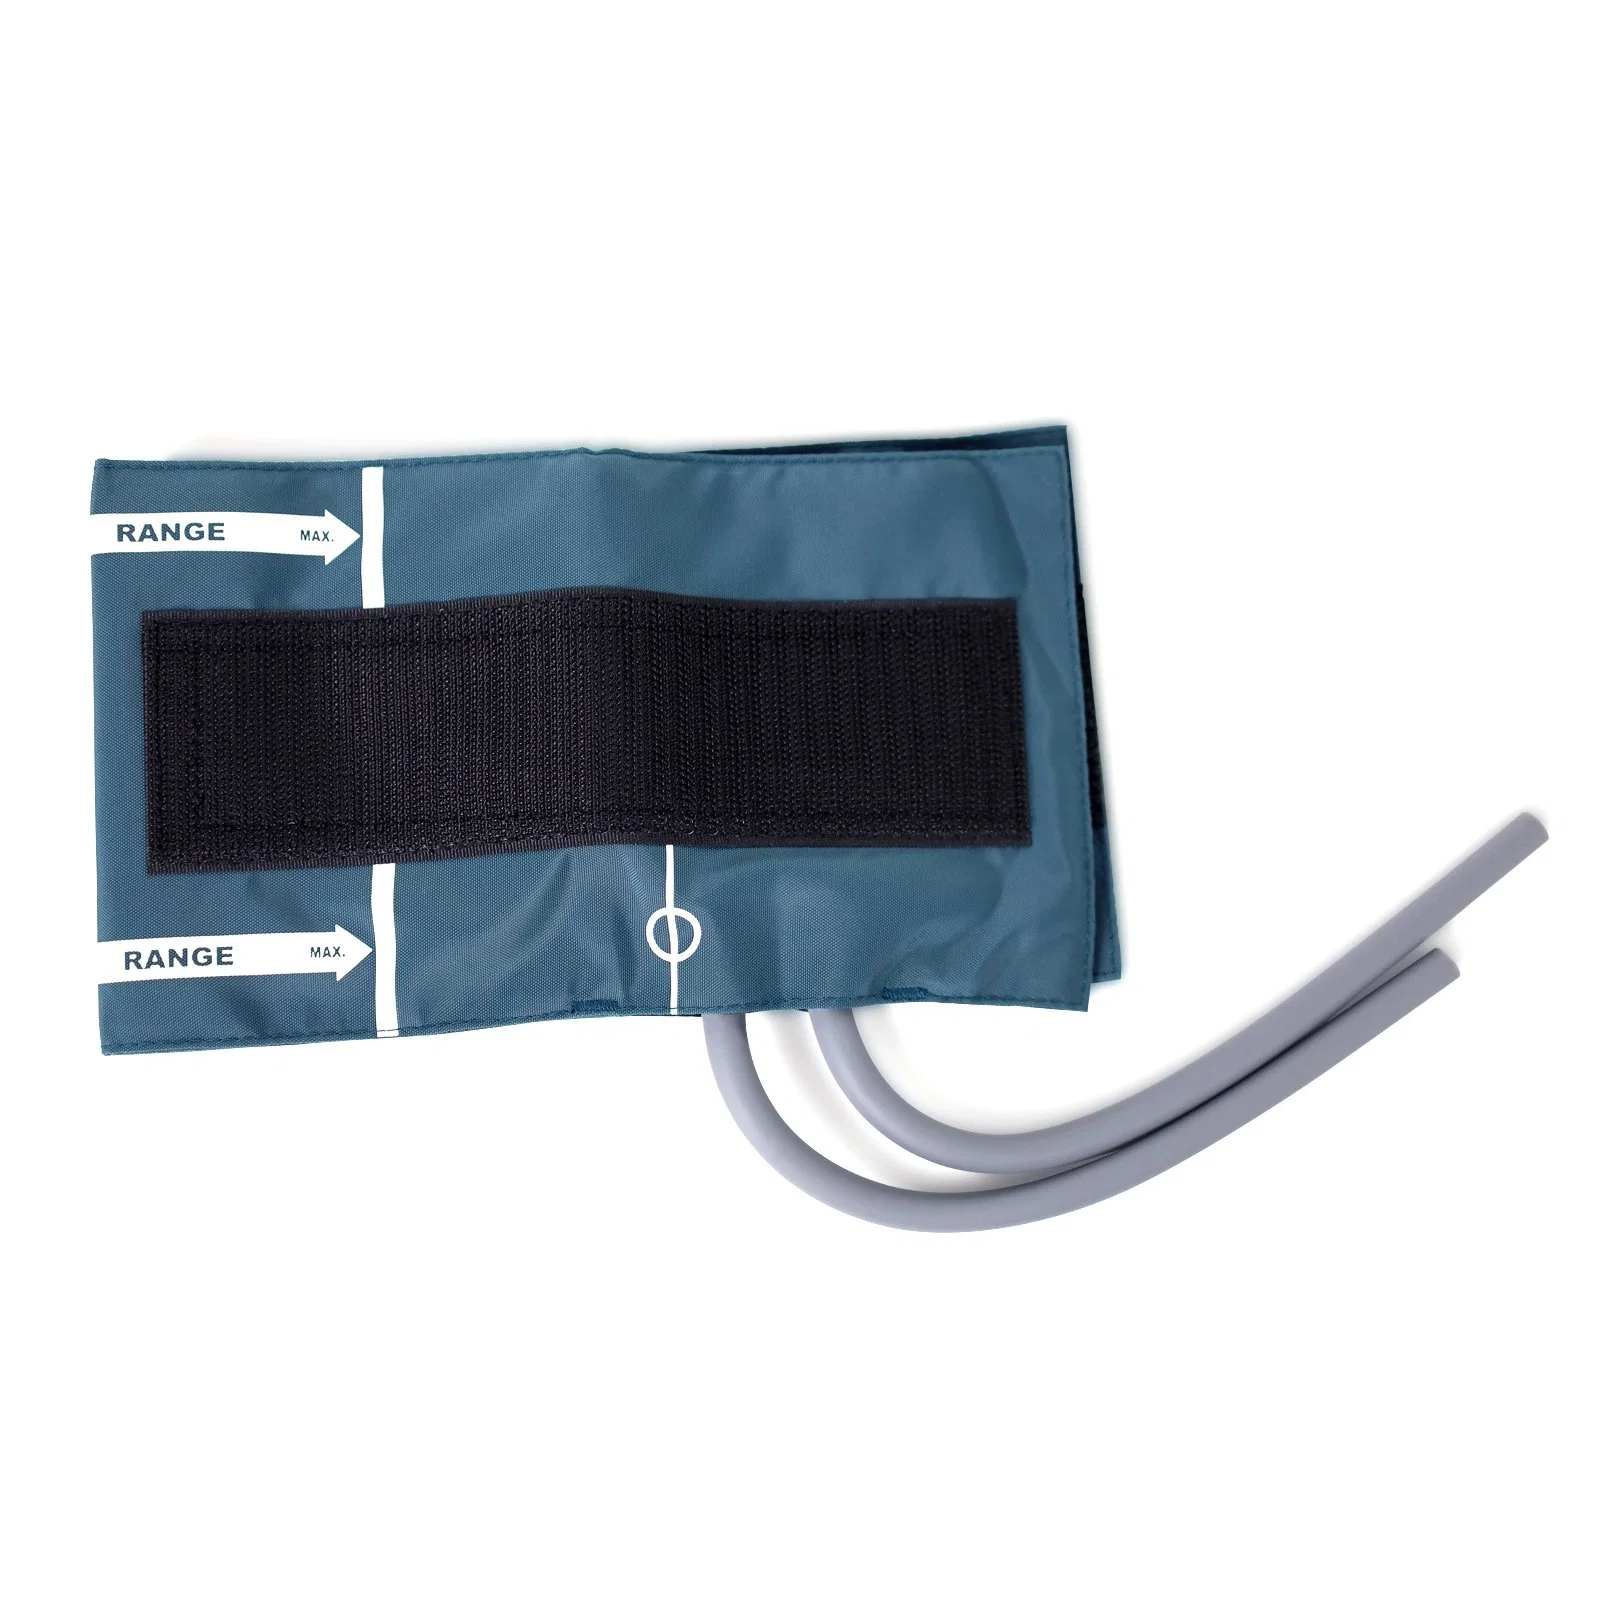 Conector do manguito/braçadeira do monitor de pressão arterial, manguito/braçadeira duplo BP